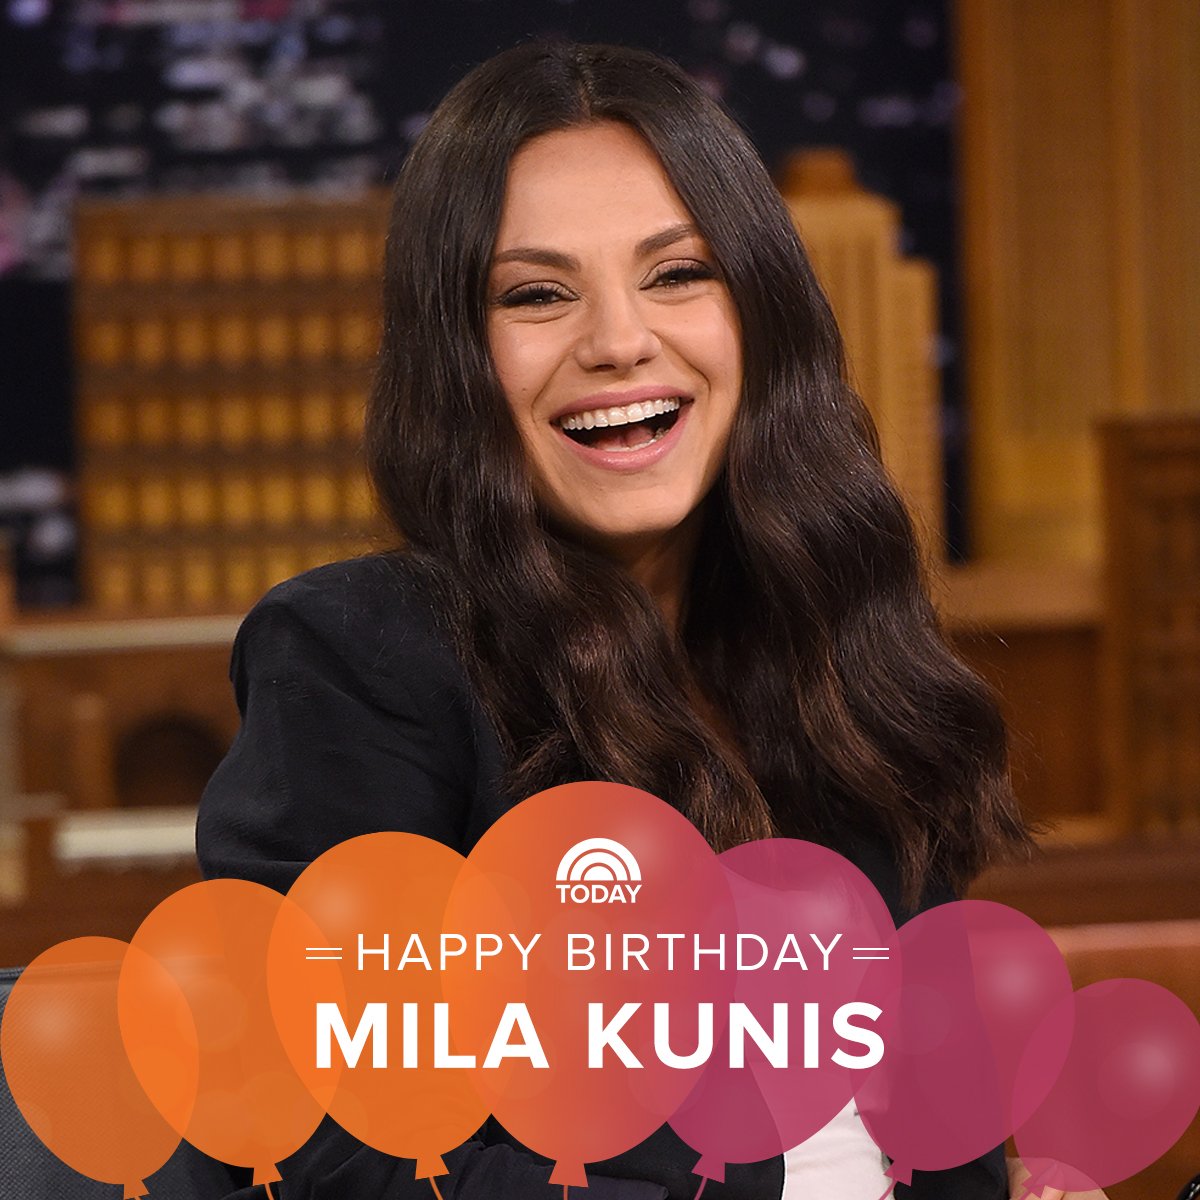 Happy birthday, Mila Kunis! 